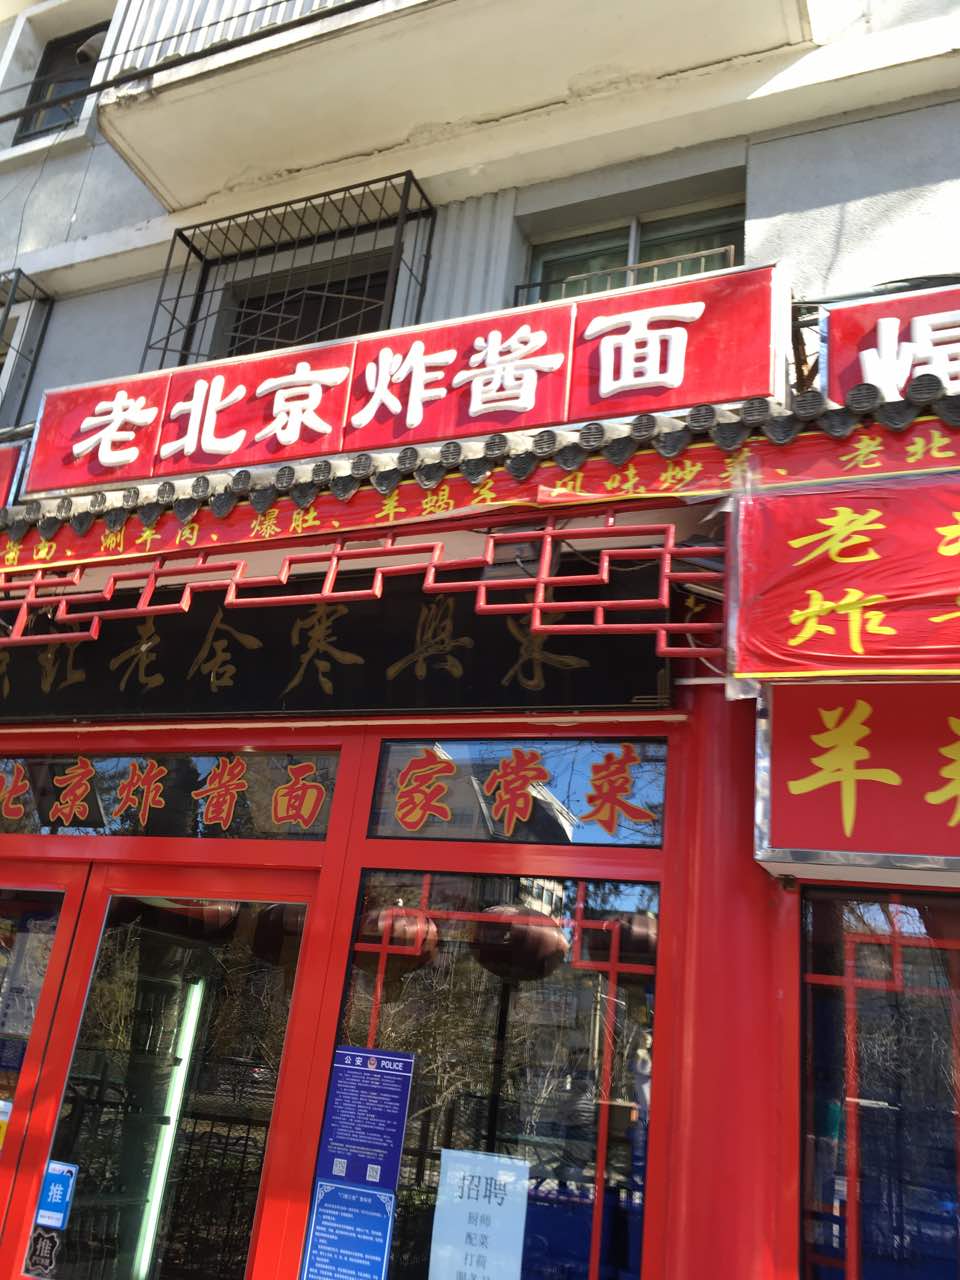 附近老北京炸酱面馆图片